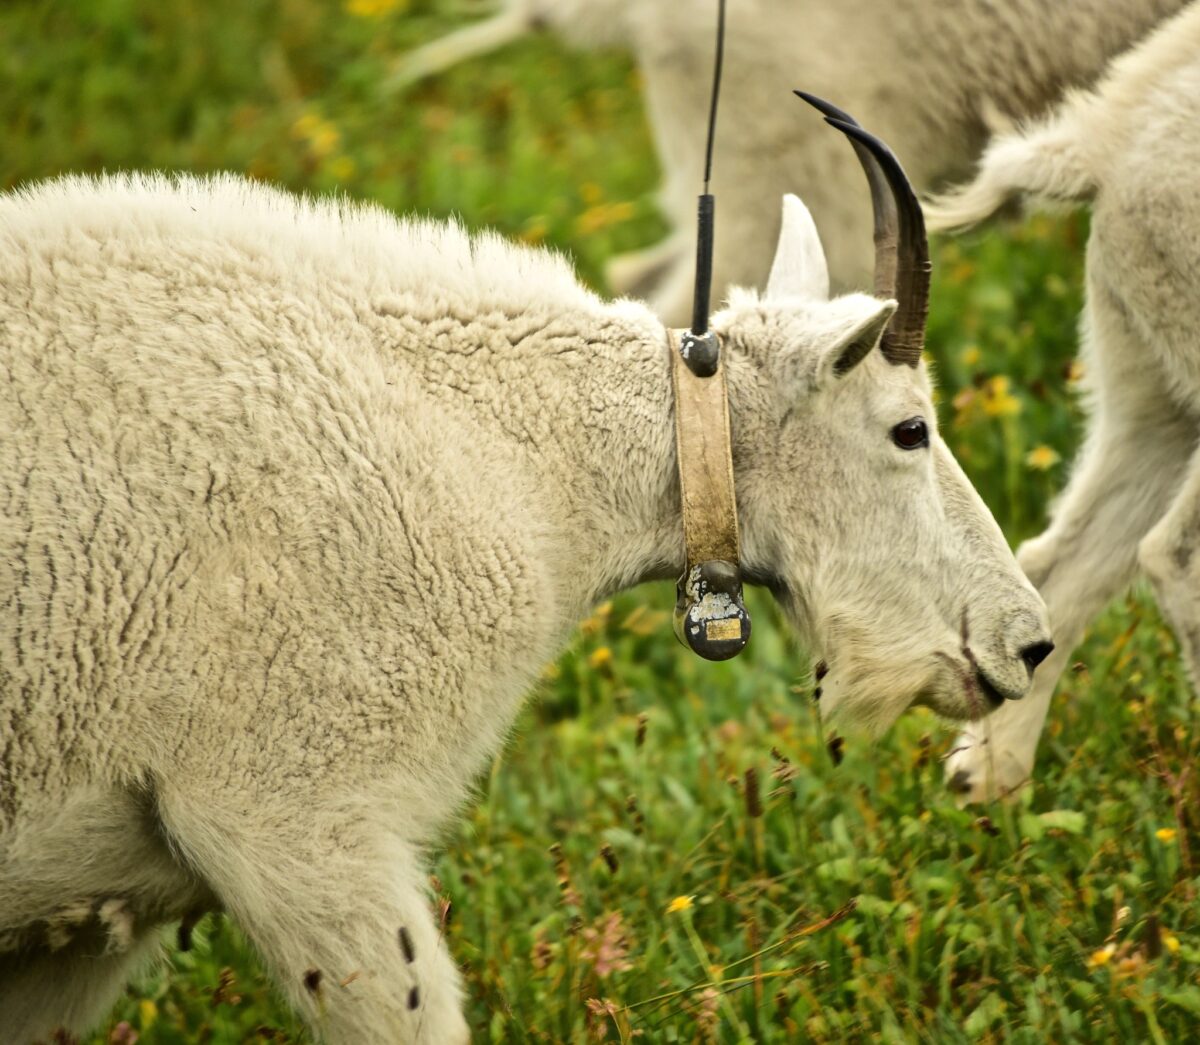 Goat wearing radio collar